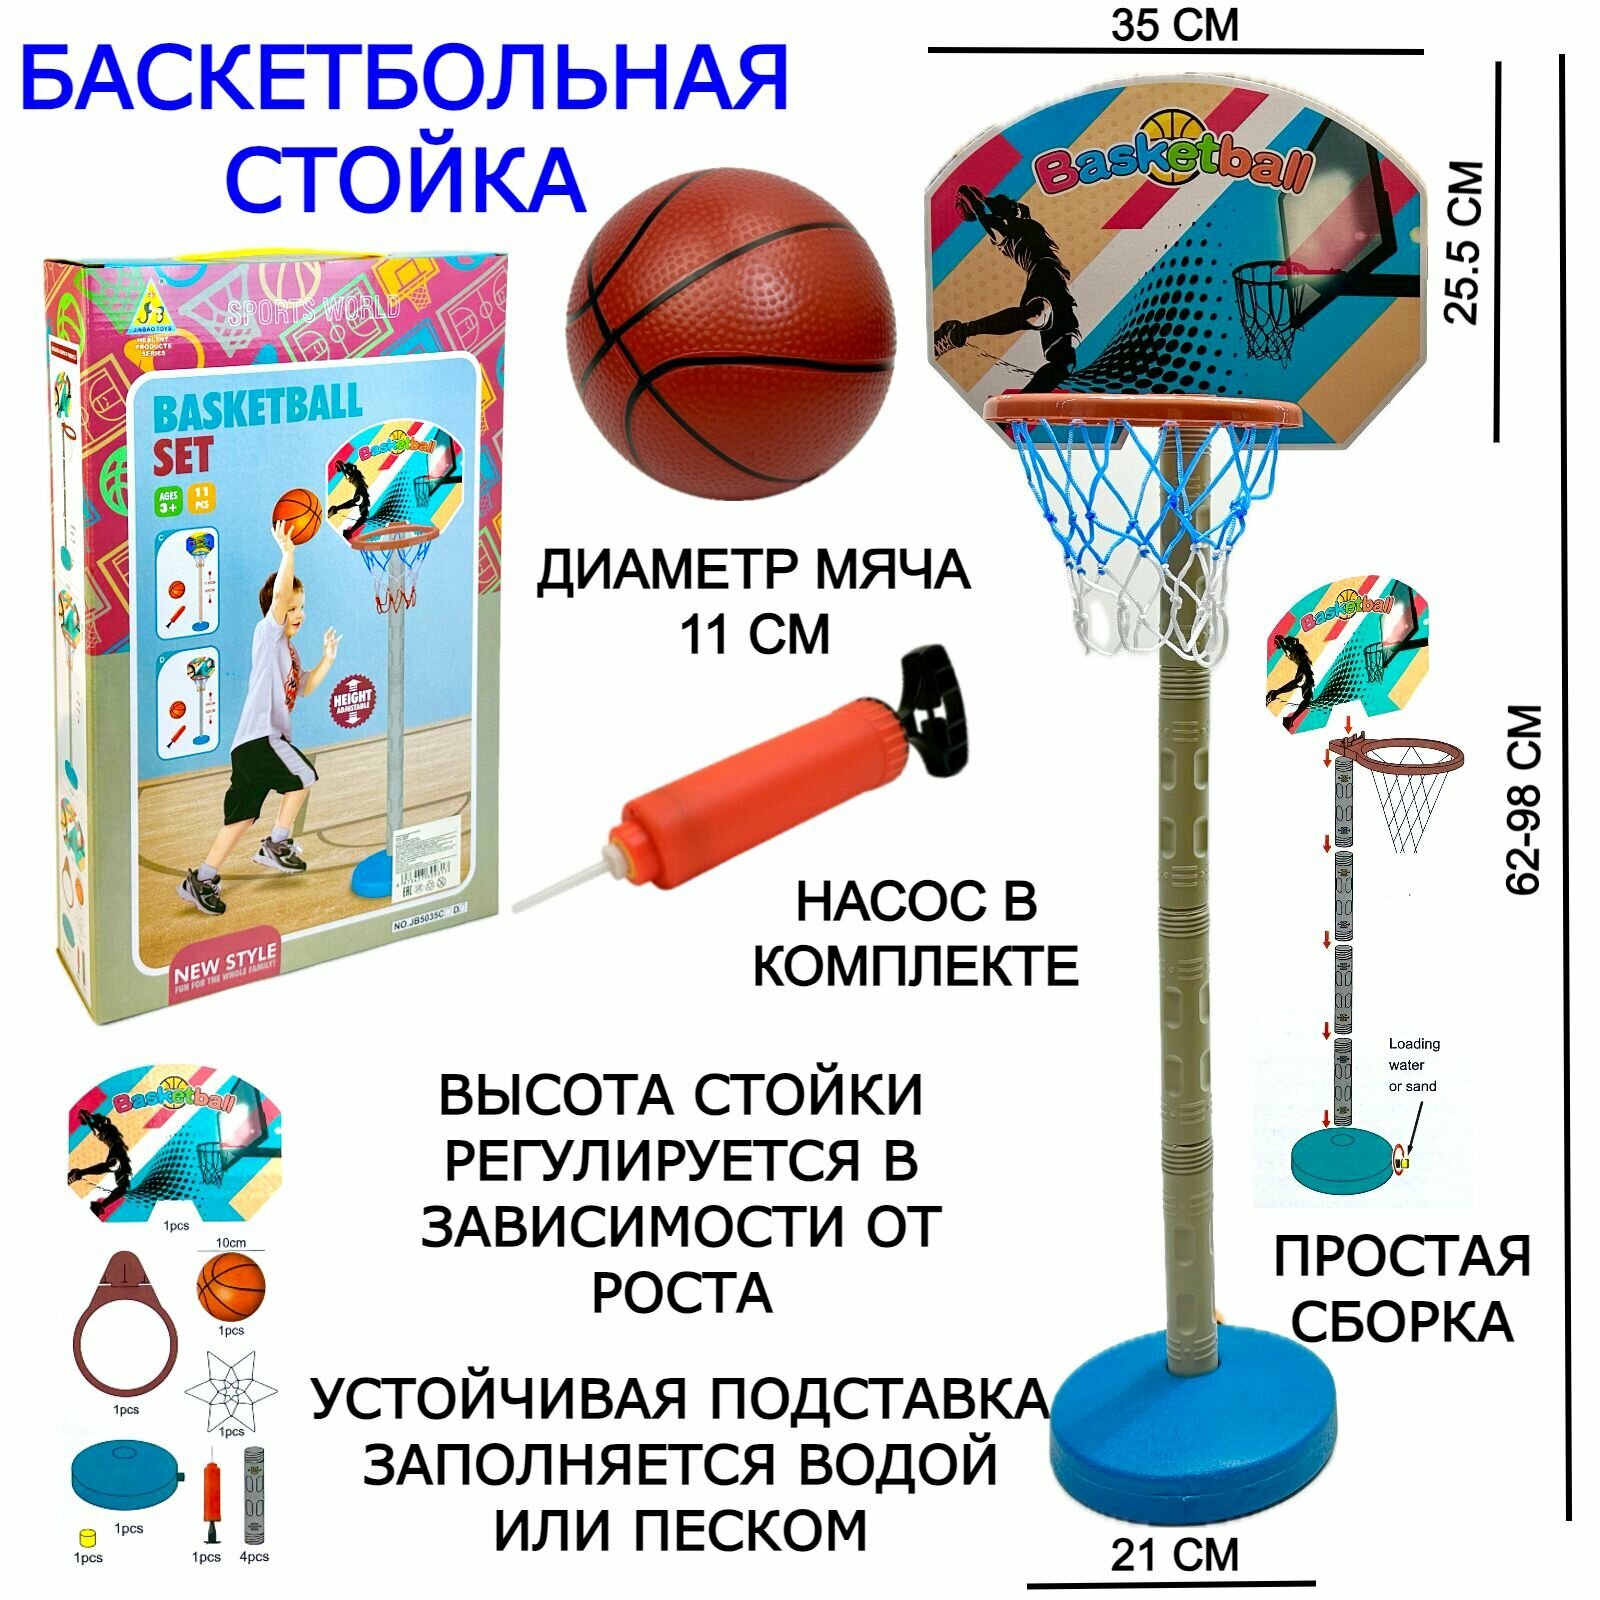 Баскетбольное кольцо со стойкой мяч насос набор детский для игры в баскетбол напольный для дома и улицы диаметр кольца 32 см щит 100-200 см